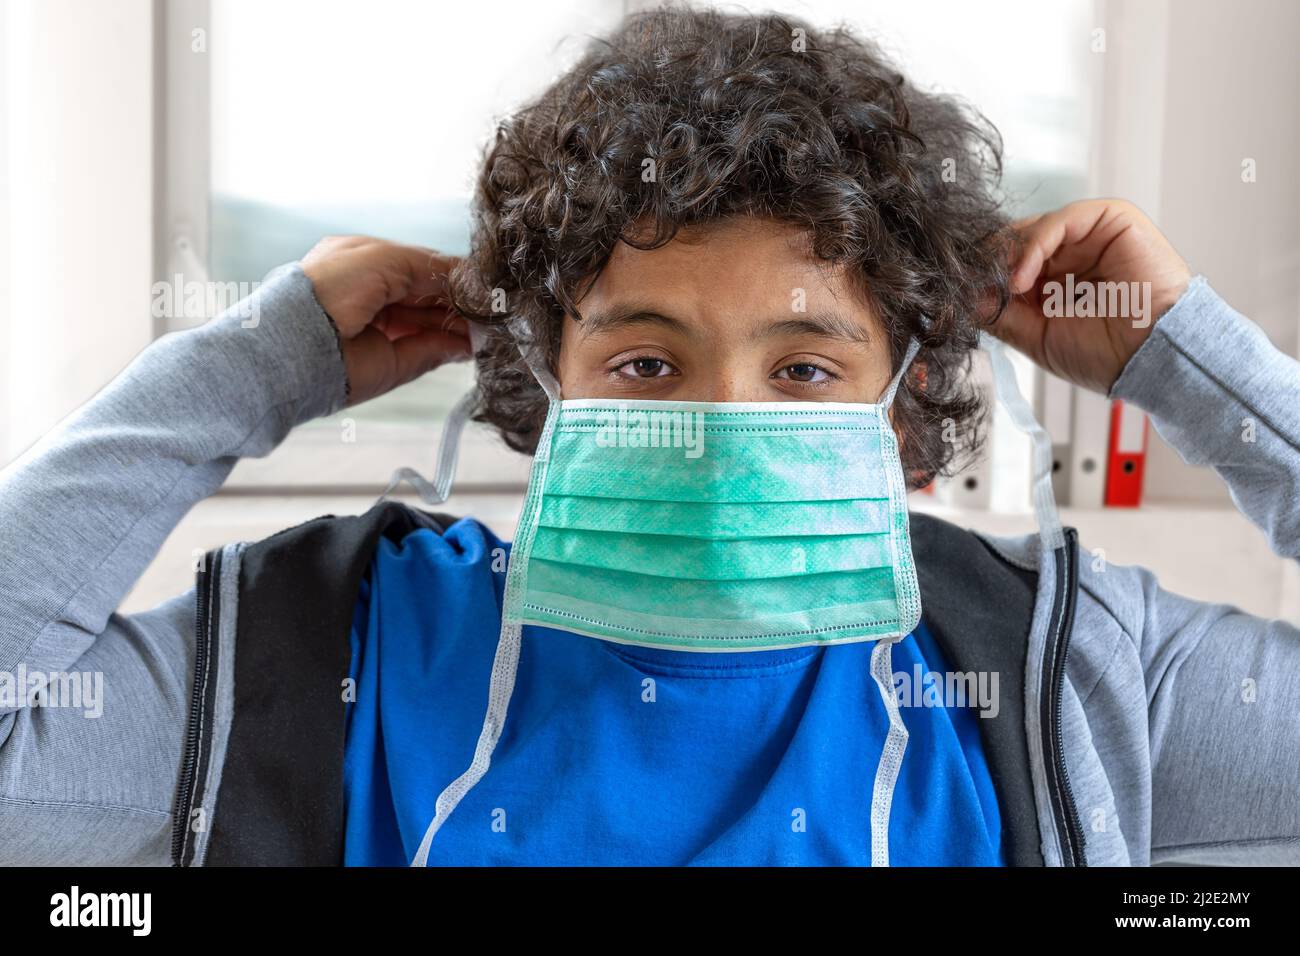 Coronavirus-Epidemie. Junge hält eine medizinische Schutzmaske Gesichtsmaske gegen: Virus, krank, Epidemie, Grippe. Coronavirus. Gesichtsmaske zum Schutz Coronavirus Ausbruch Stockfoto